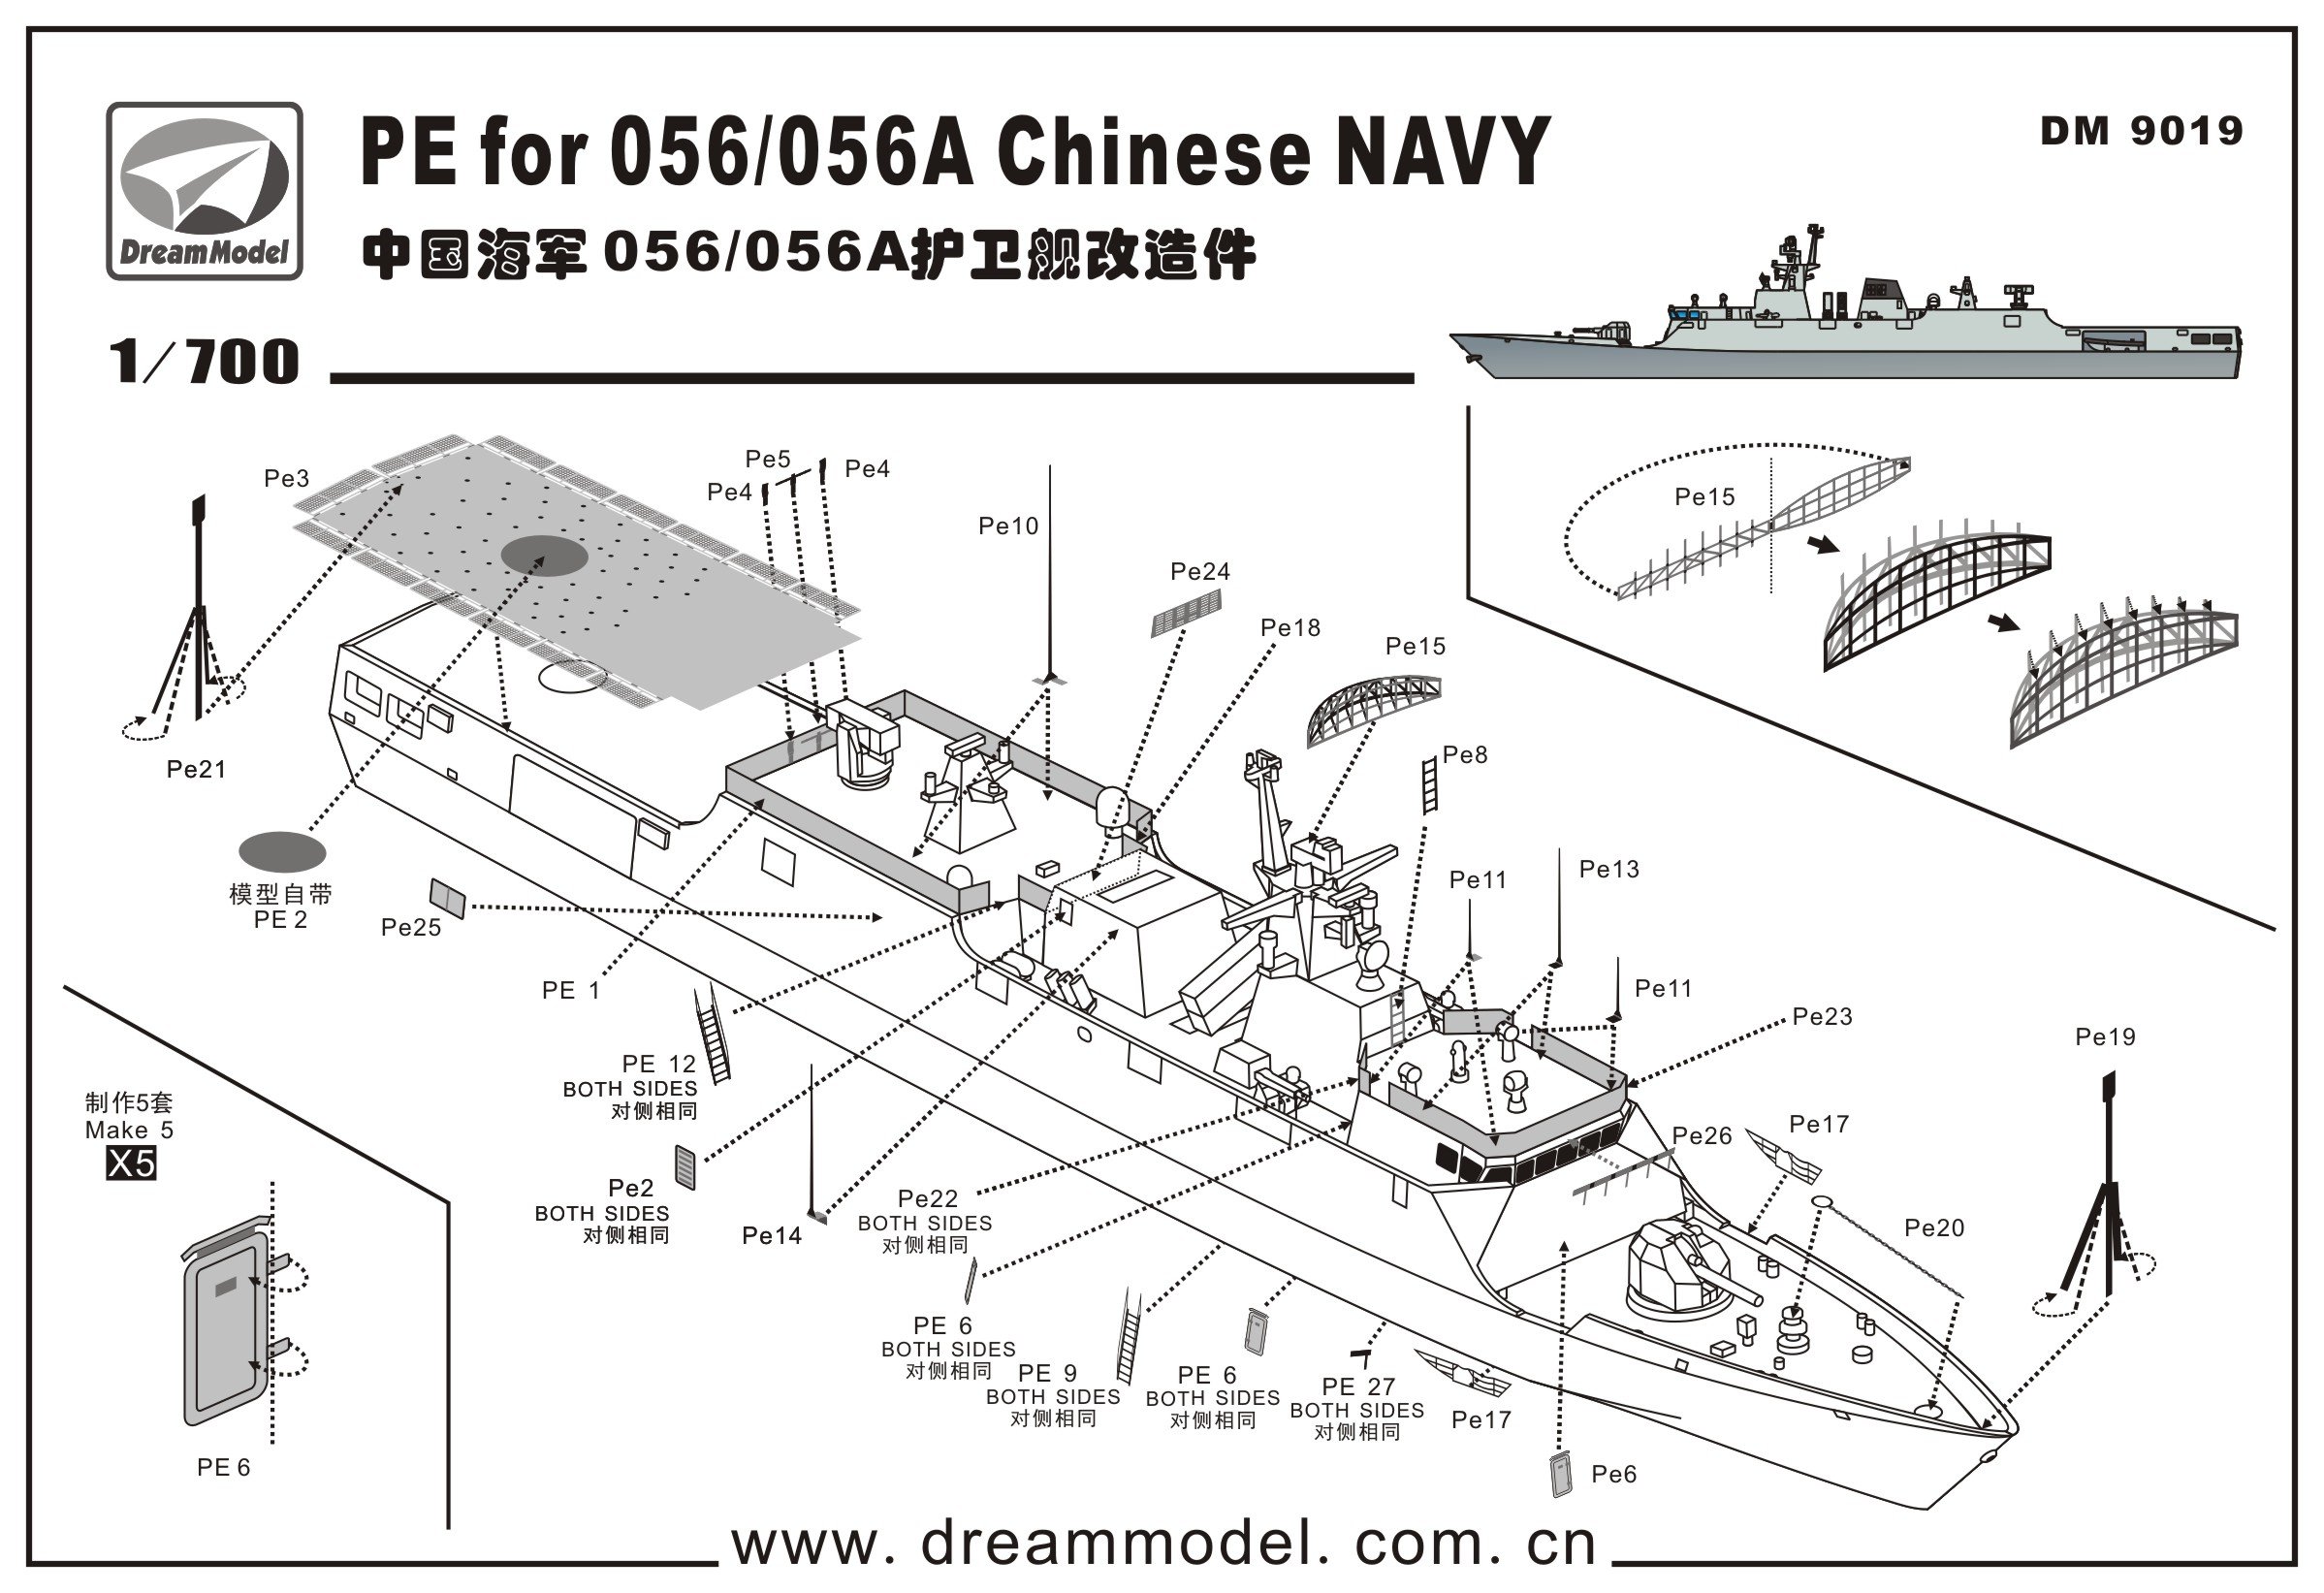 1/700 现代中国海军056/056A型护卫舰改造蚀刻片 - 点击图像关闭